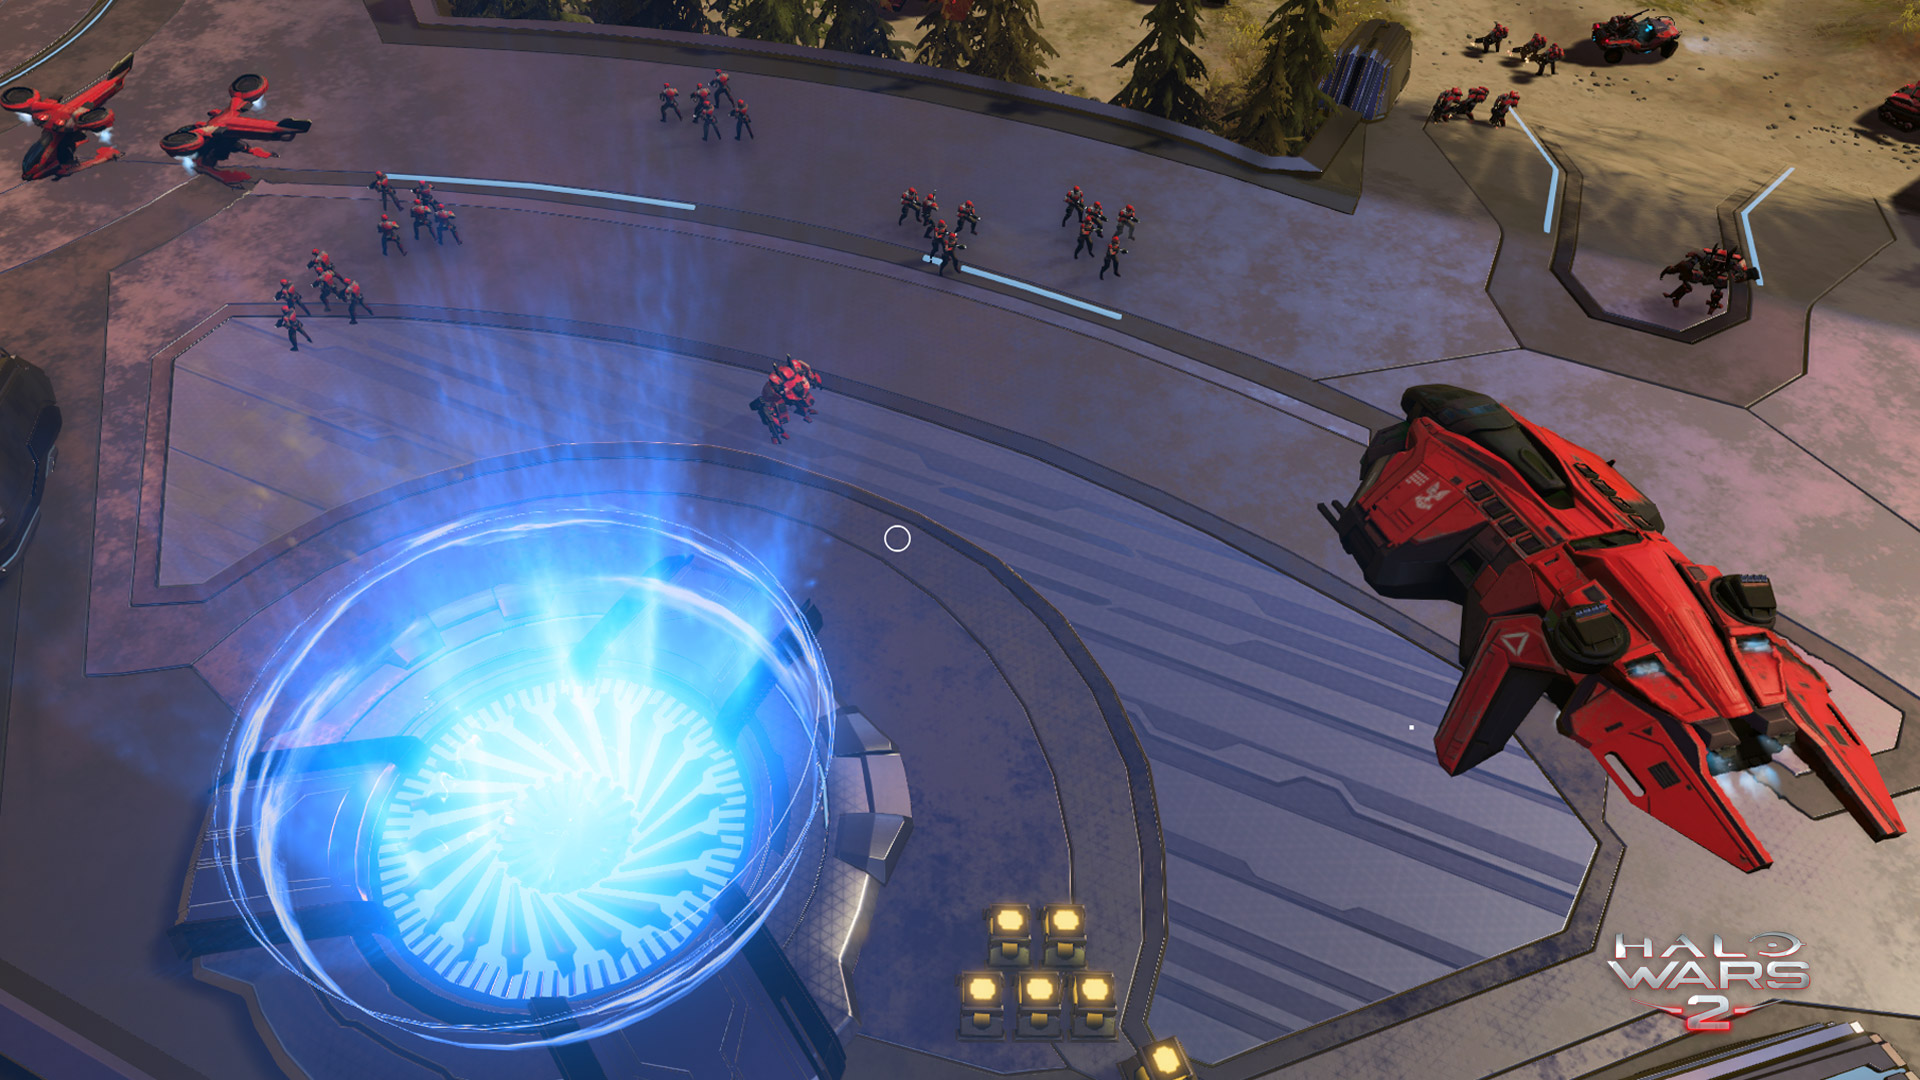 Siêu phẩm game chiến thuật Halo Wars 2 tung trailer hoành tráng, ra mắt ngày 21.2